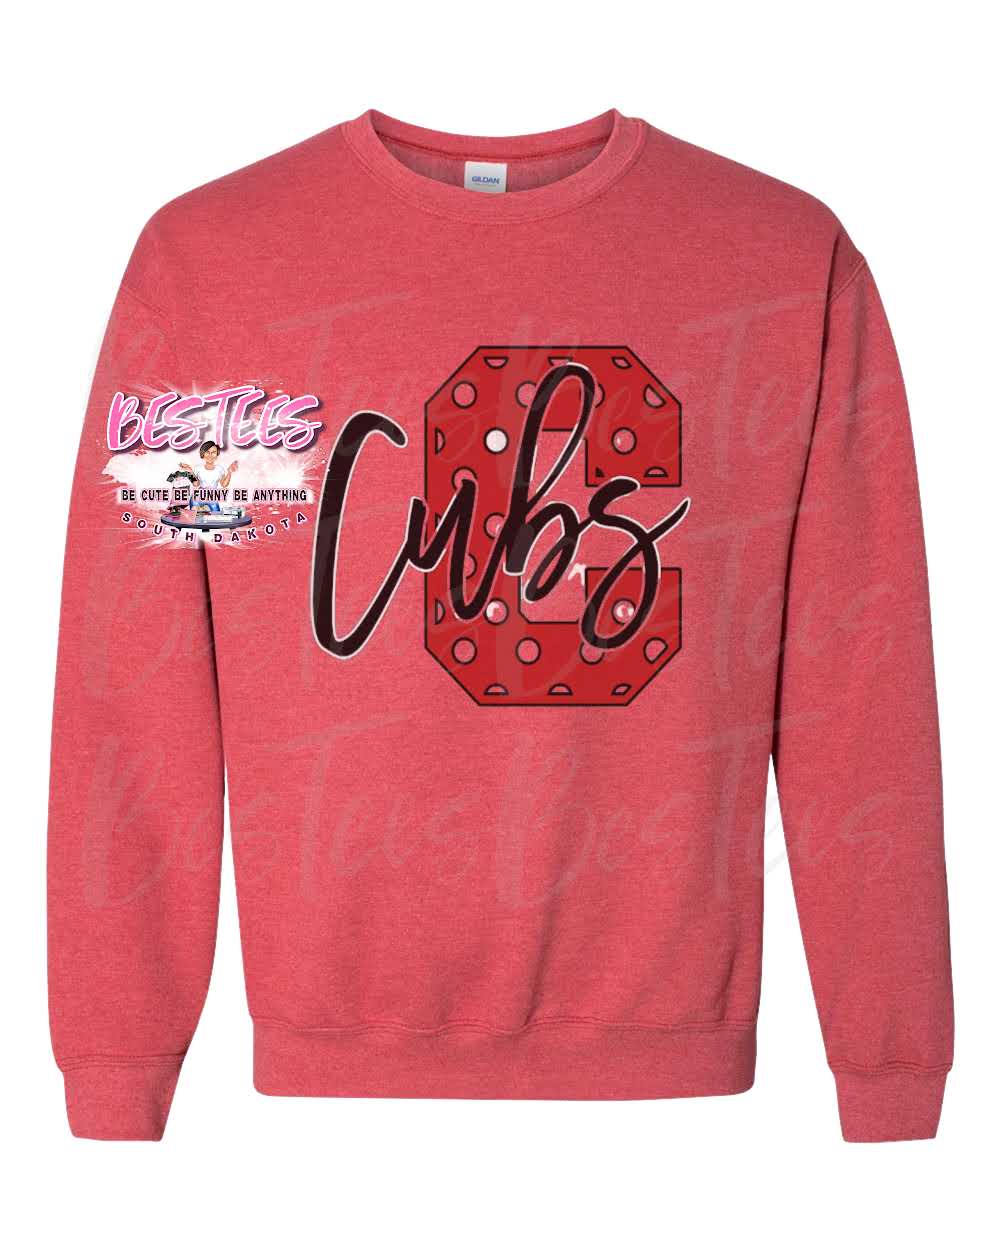 Cubs Crew Neck Sweatshirt |BESTEES-SD|